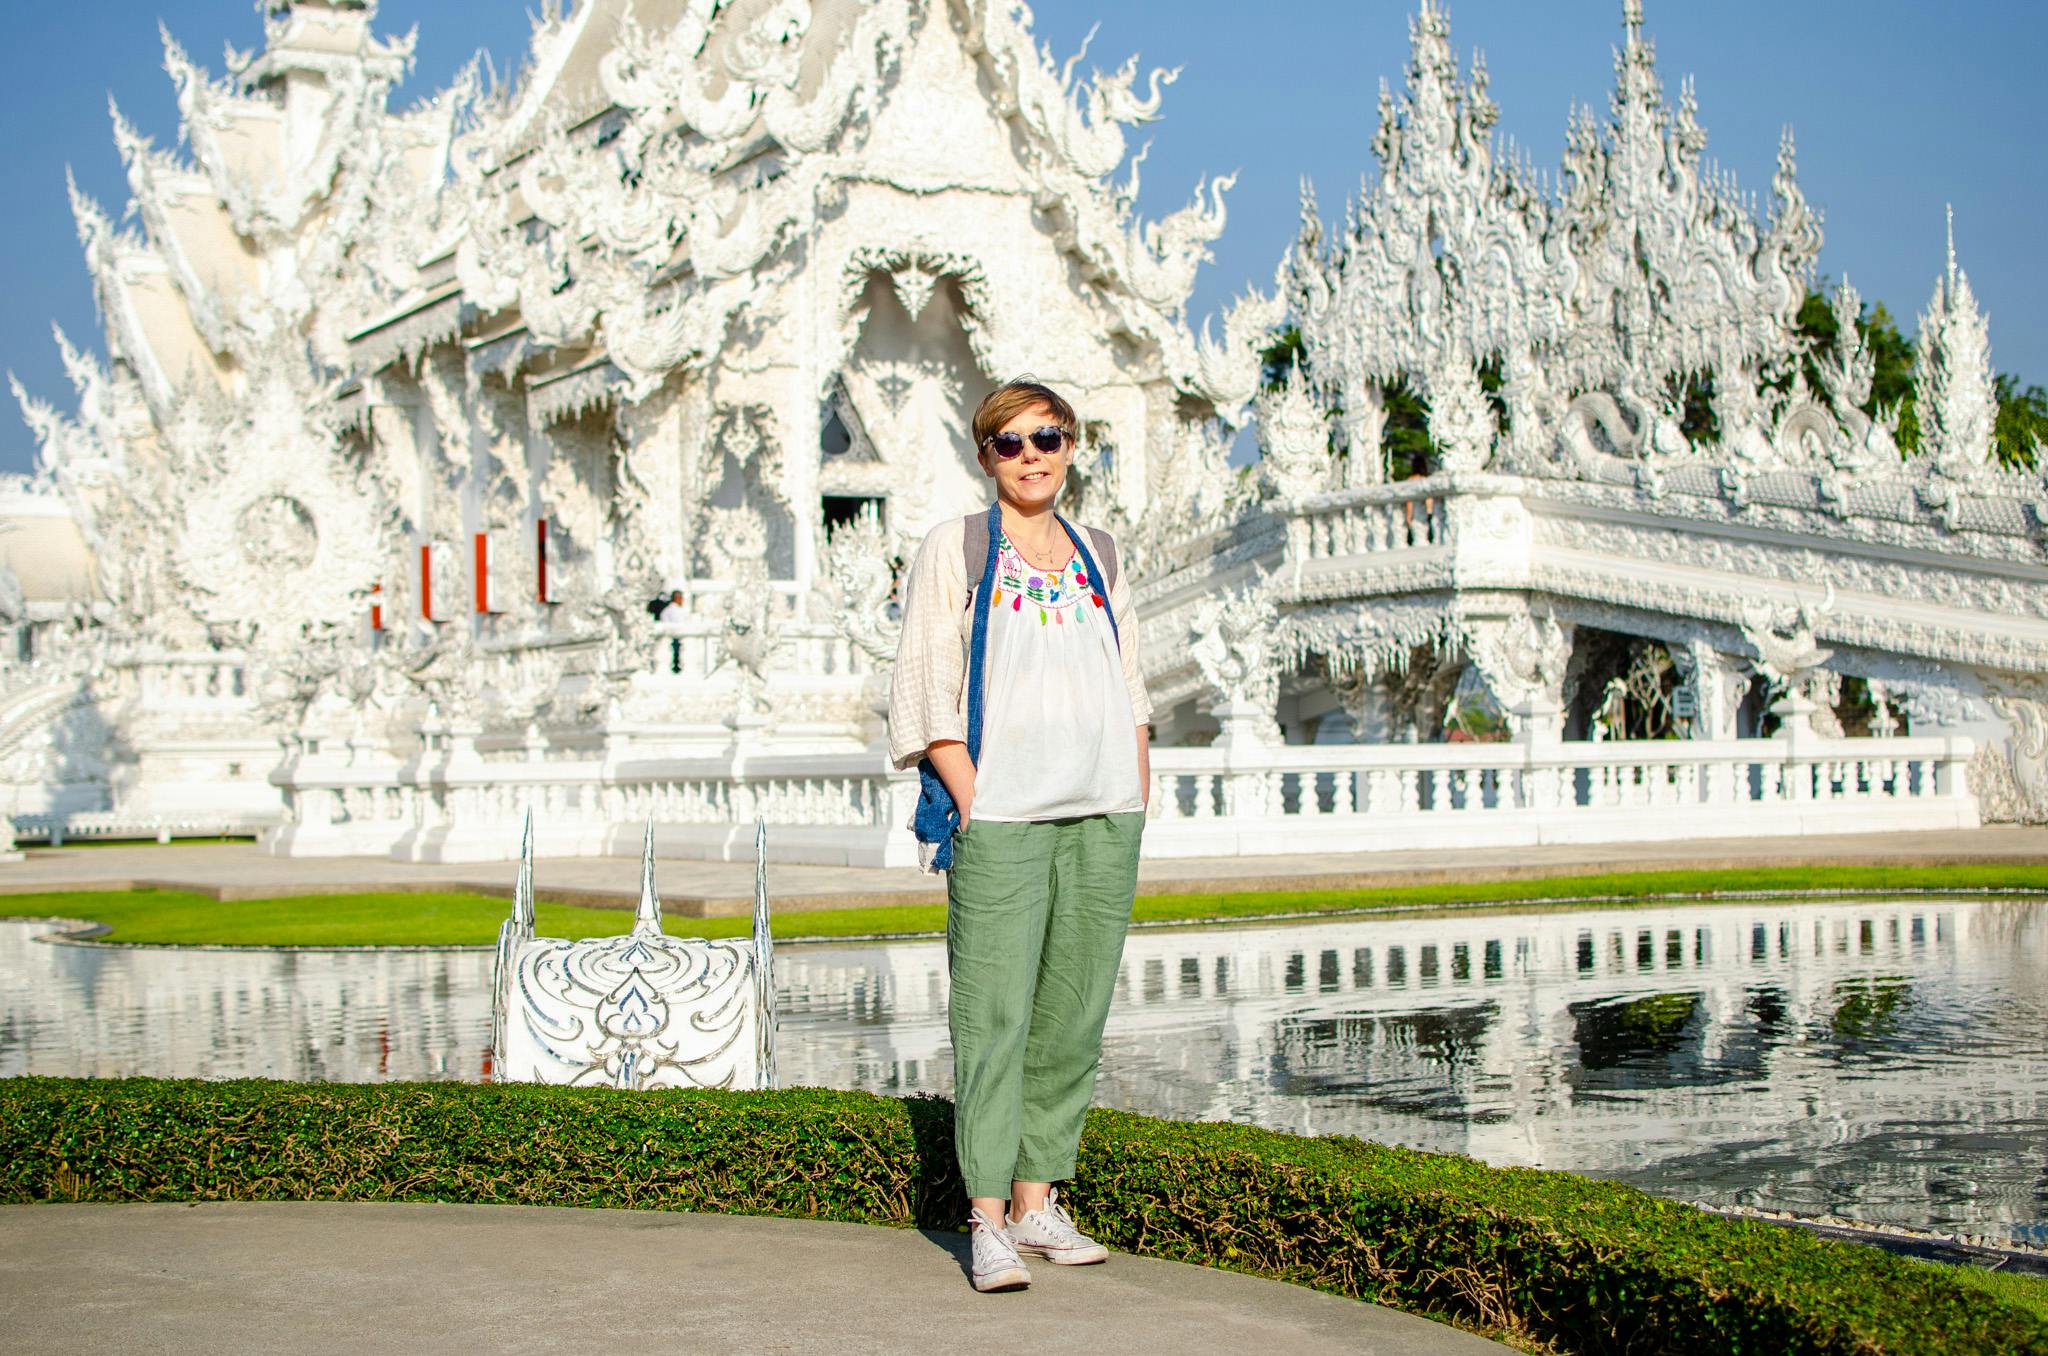 Budynek białej świątyni, Chiang Rai.